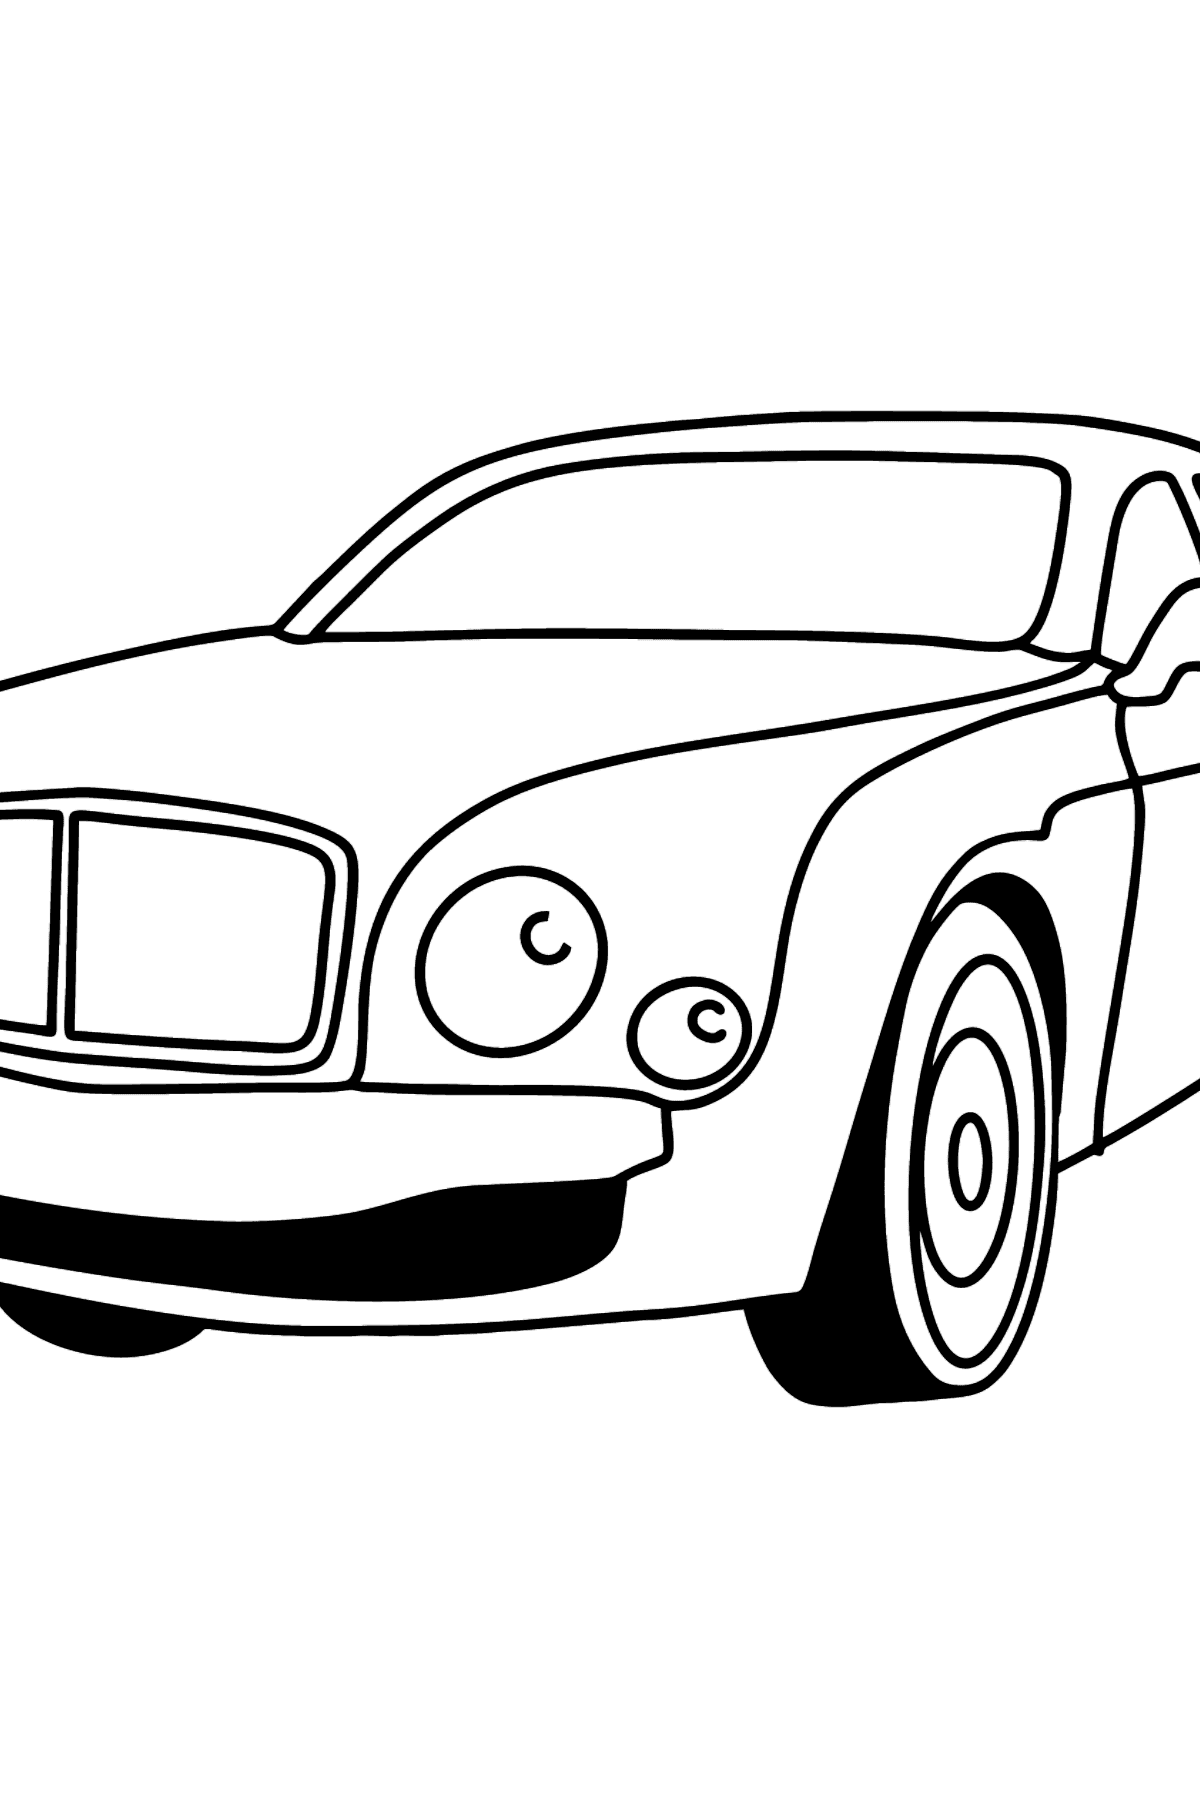 Boyama sayfası araba Bentley - Boyamalar çocuklar için